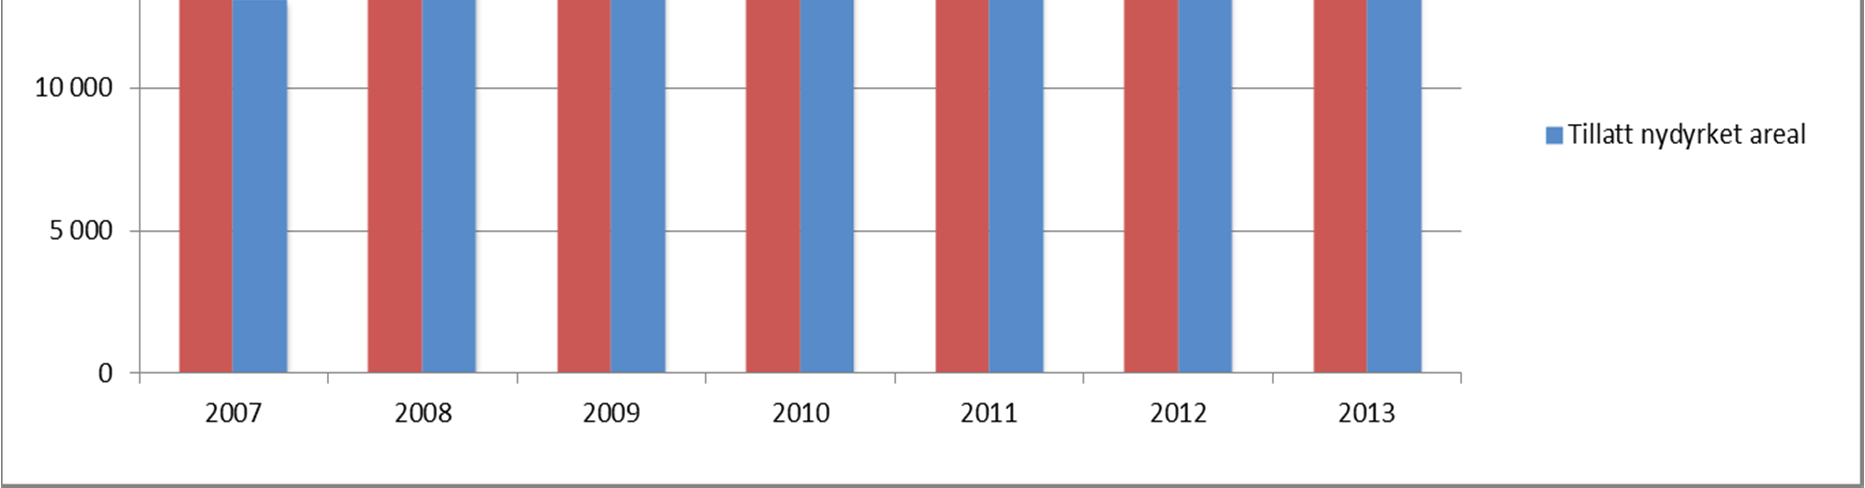 Figur 11: Antall dekar omsøkt og antall dekar tillatt nydyrket areal, 2005-2013. Dekar.